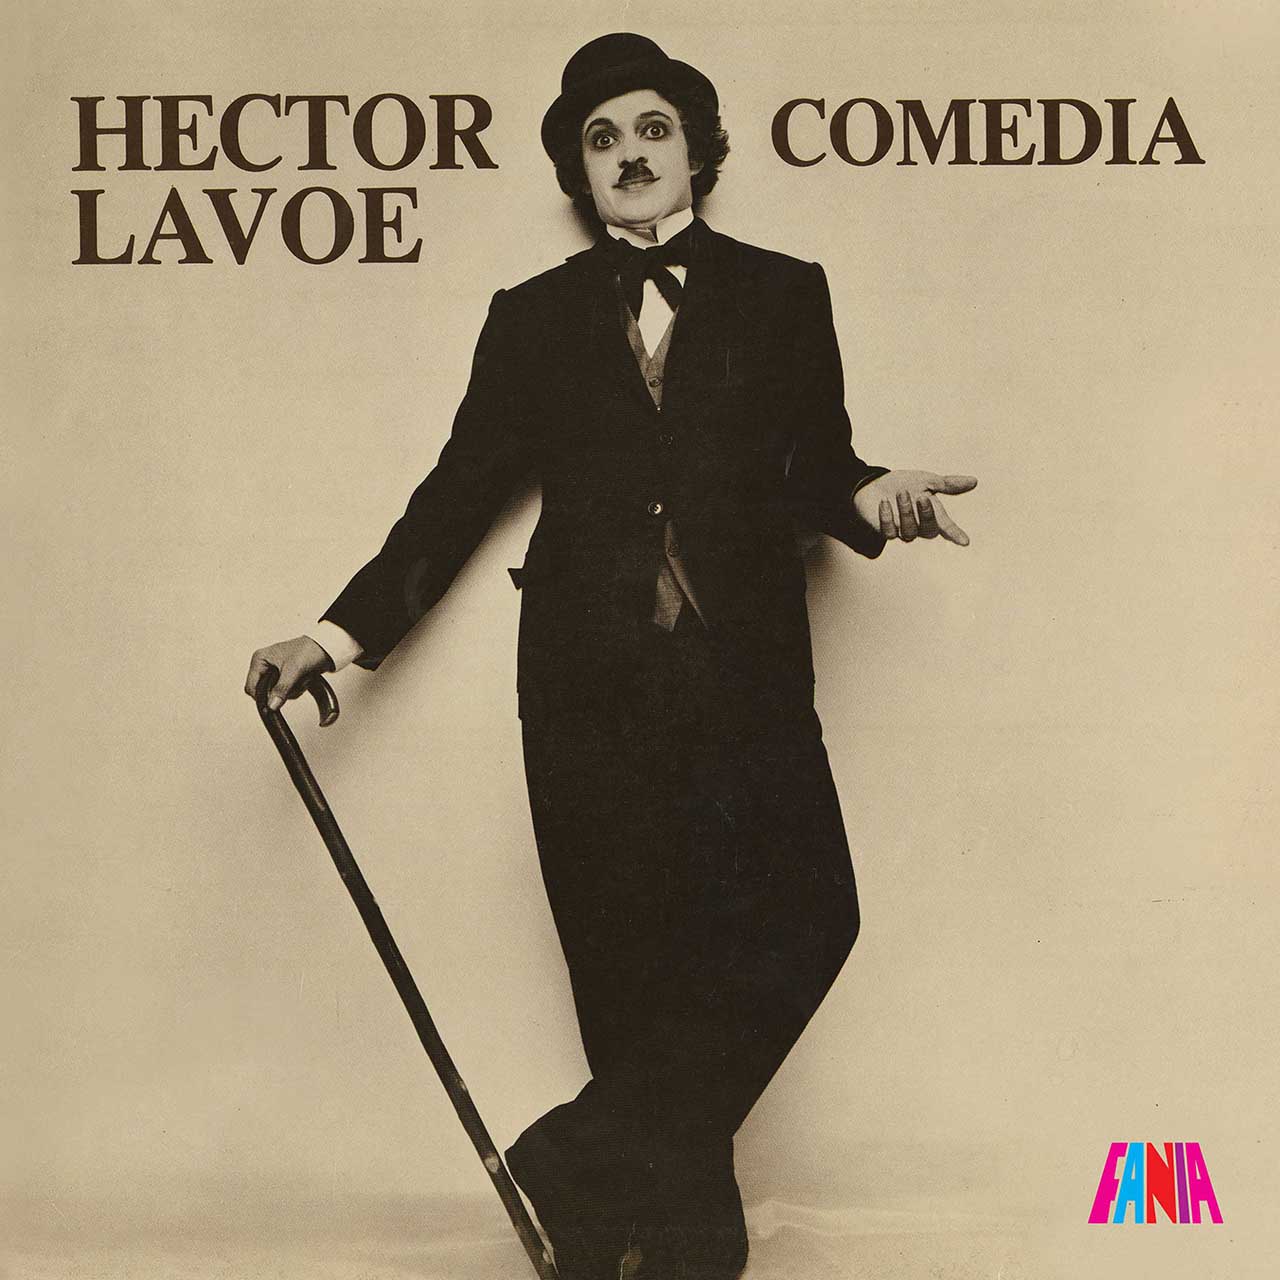 ‘Comedia’: Héctor Lavoe’s Incredible Comeback Album